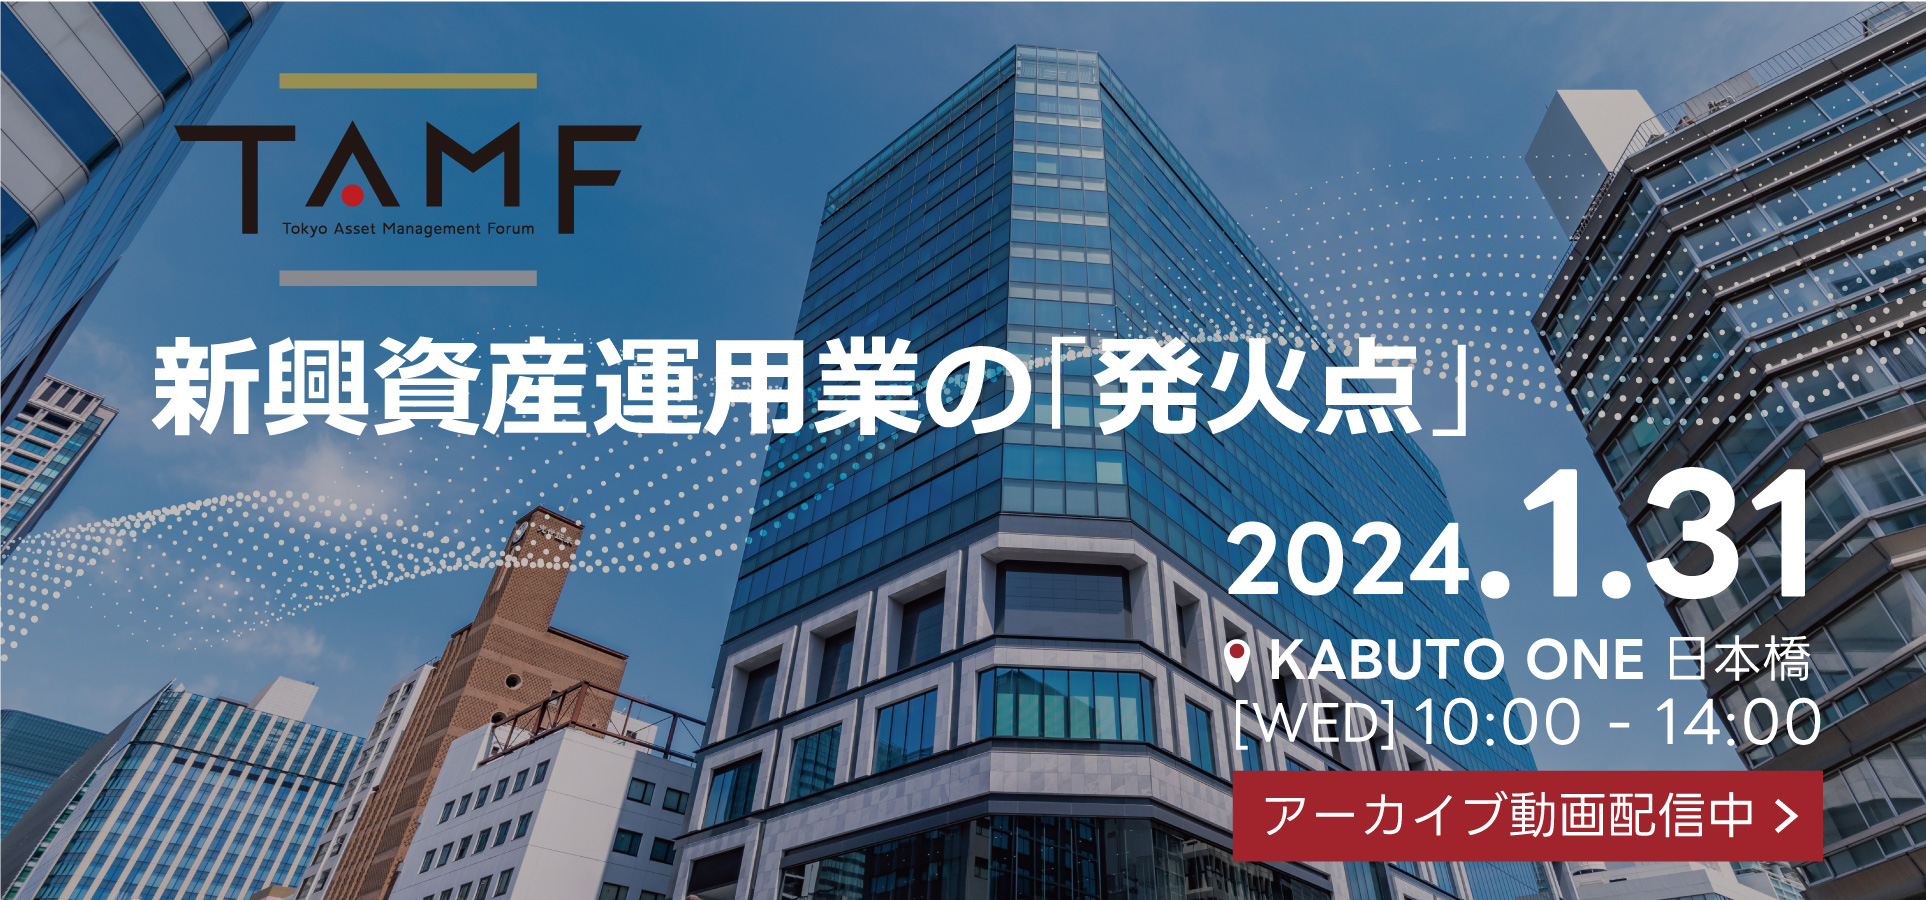 【2024年1月31日(水)開催】TAMFは、新興資産運用業者(Emerging managers)の紹介及び資産運用業に係る各種情報を提供するセミナーです。2024年のTAMFでは、EM（エマージング・マネージャーズ）から優れた活動をされている方をご紹介します。本年は「FinCity Global Forum」と同日開催。資産運用分野に特化した議論を深める1日です。